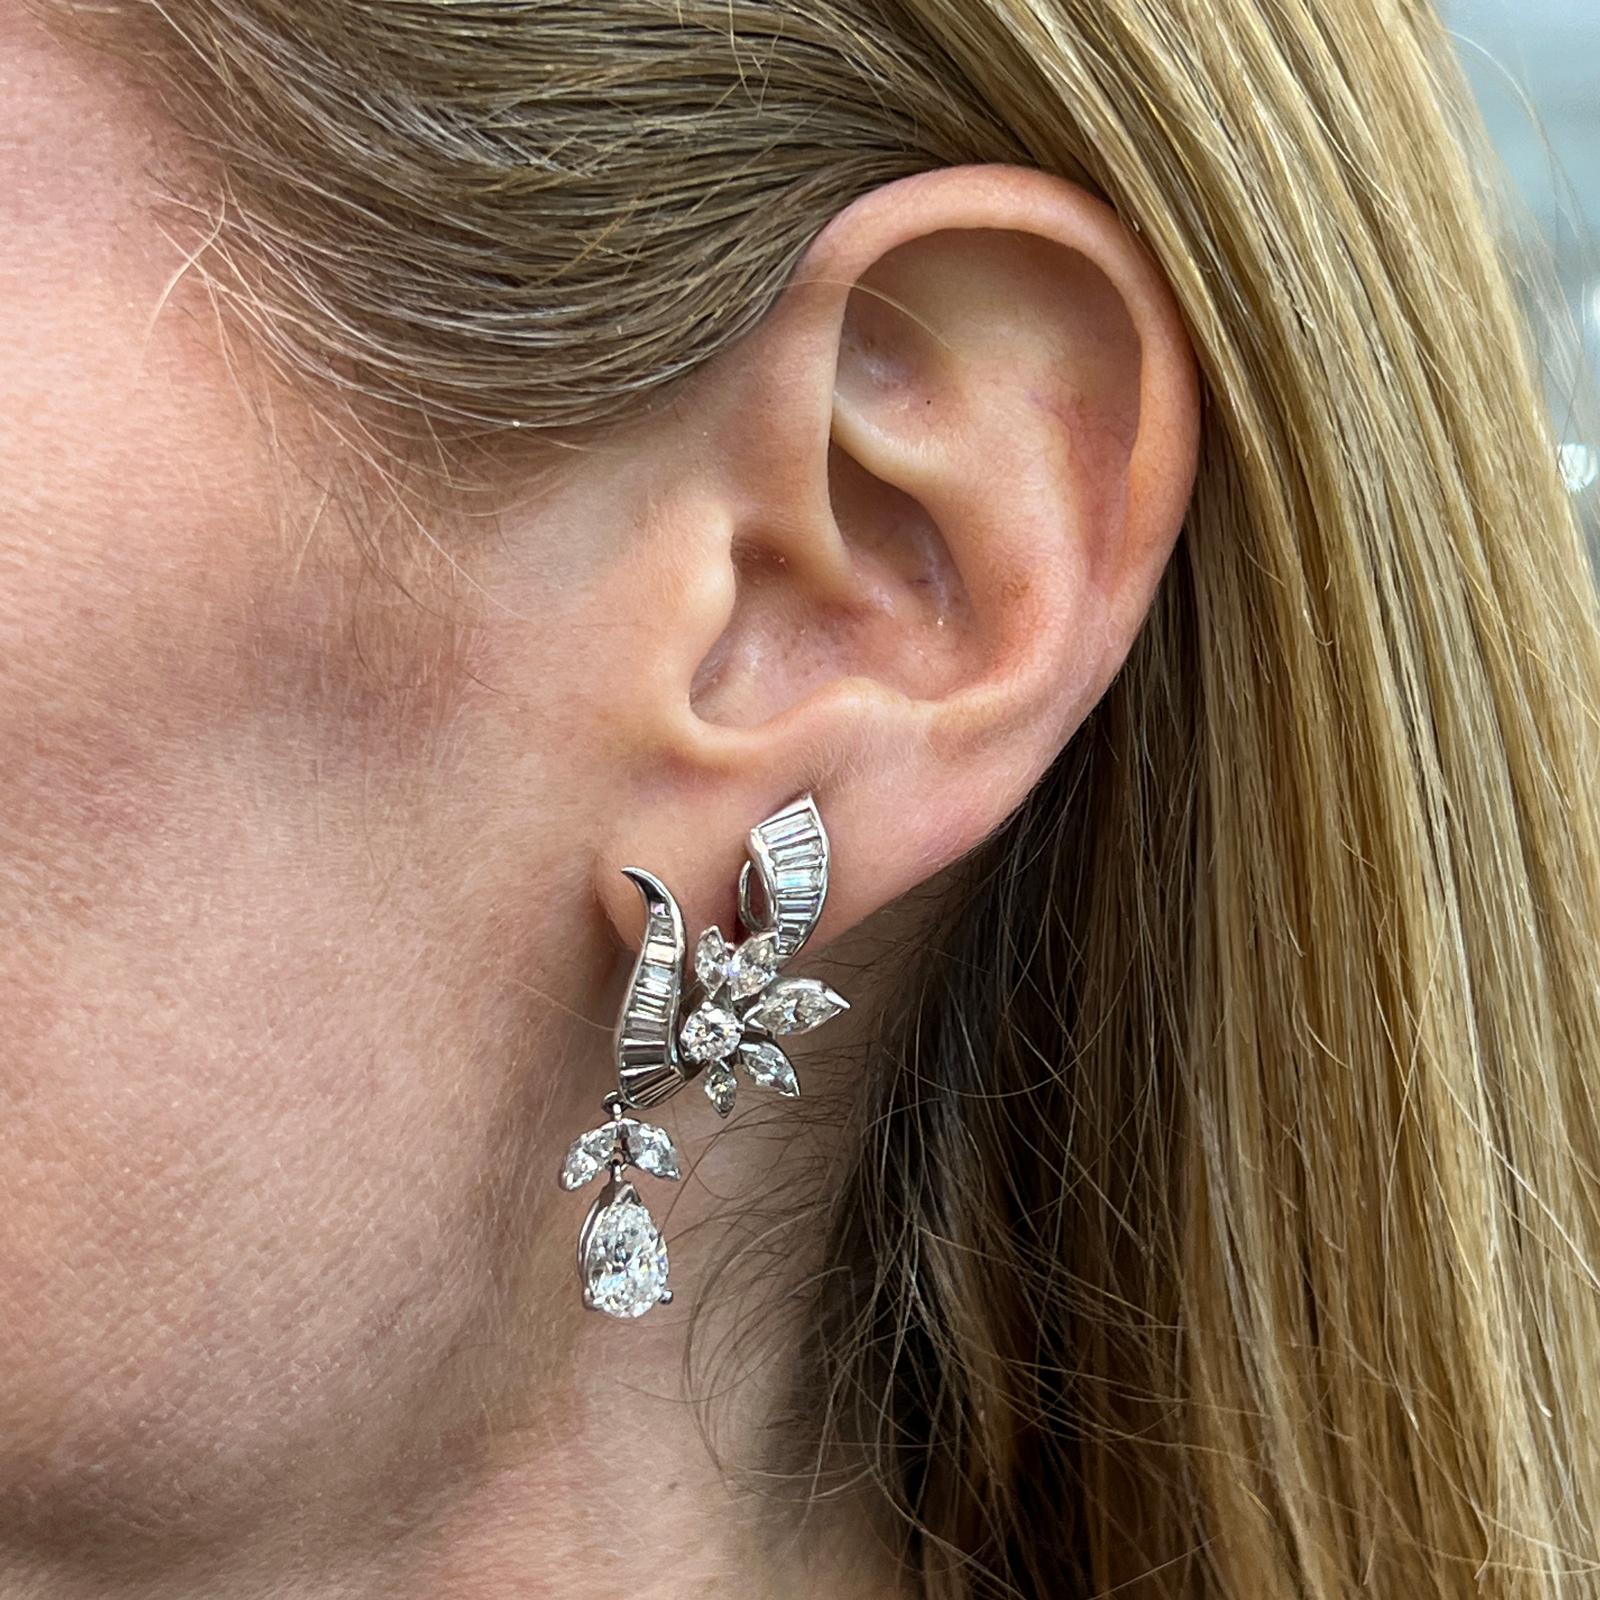 Atemberaubende Diamanttropfen-Ohrringe, handgefertigt aus Platin. Diese Estate-Ohrringe bestehen aus 2 birnenförmigen Diamanten mit einem Gesamtgewicht von 2,23 Karat. Die runden Diamanten in Brillant-, Baguette- und Marquise-Form wiegen weitere